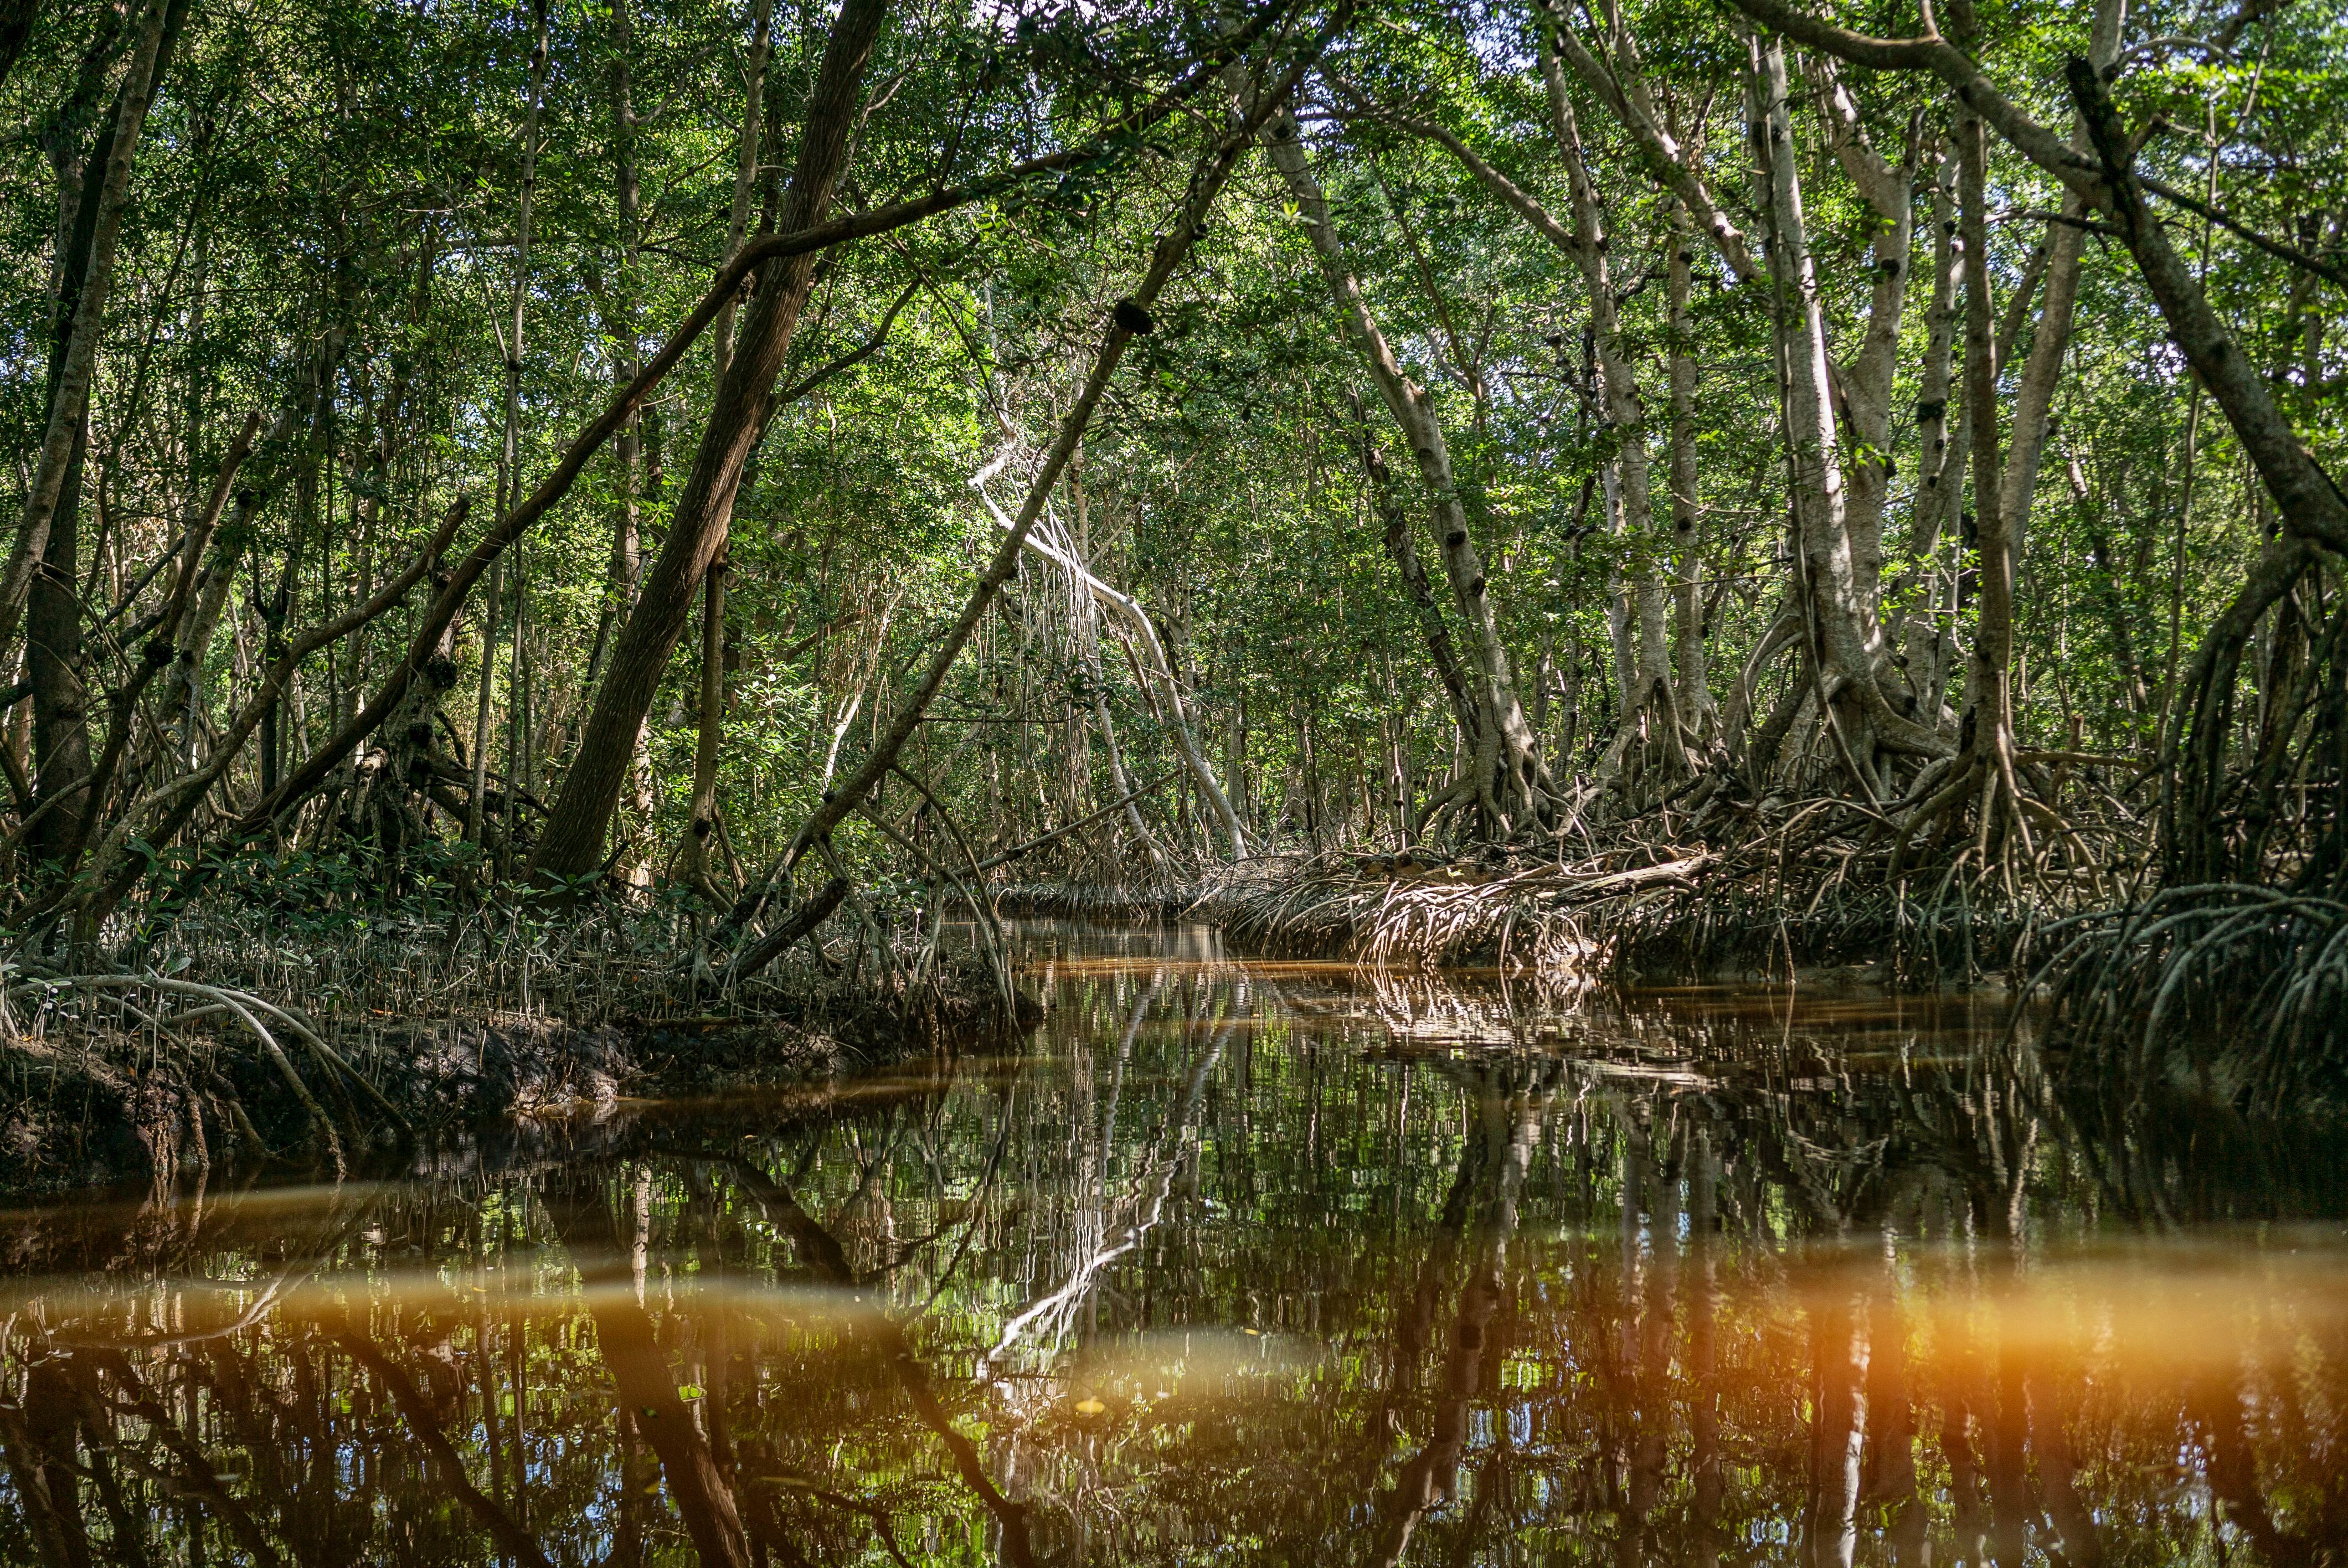 Entonces, la comunidad comenzó a hacer canales para que se mantuviera el flujo del agua de los manglares. En esas condiciones, los propios mangles se fueron reforestando de manera natural. Al esparcir el viento las semillas, estas encontraban un ambiente idóneo para reproducirse. 